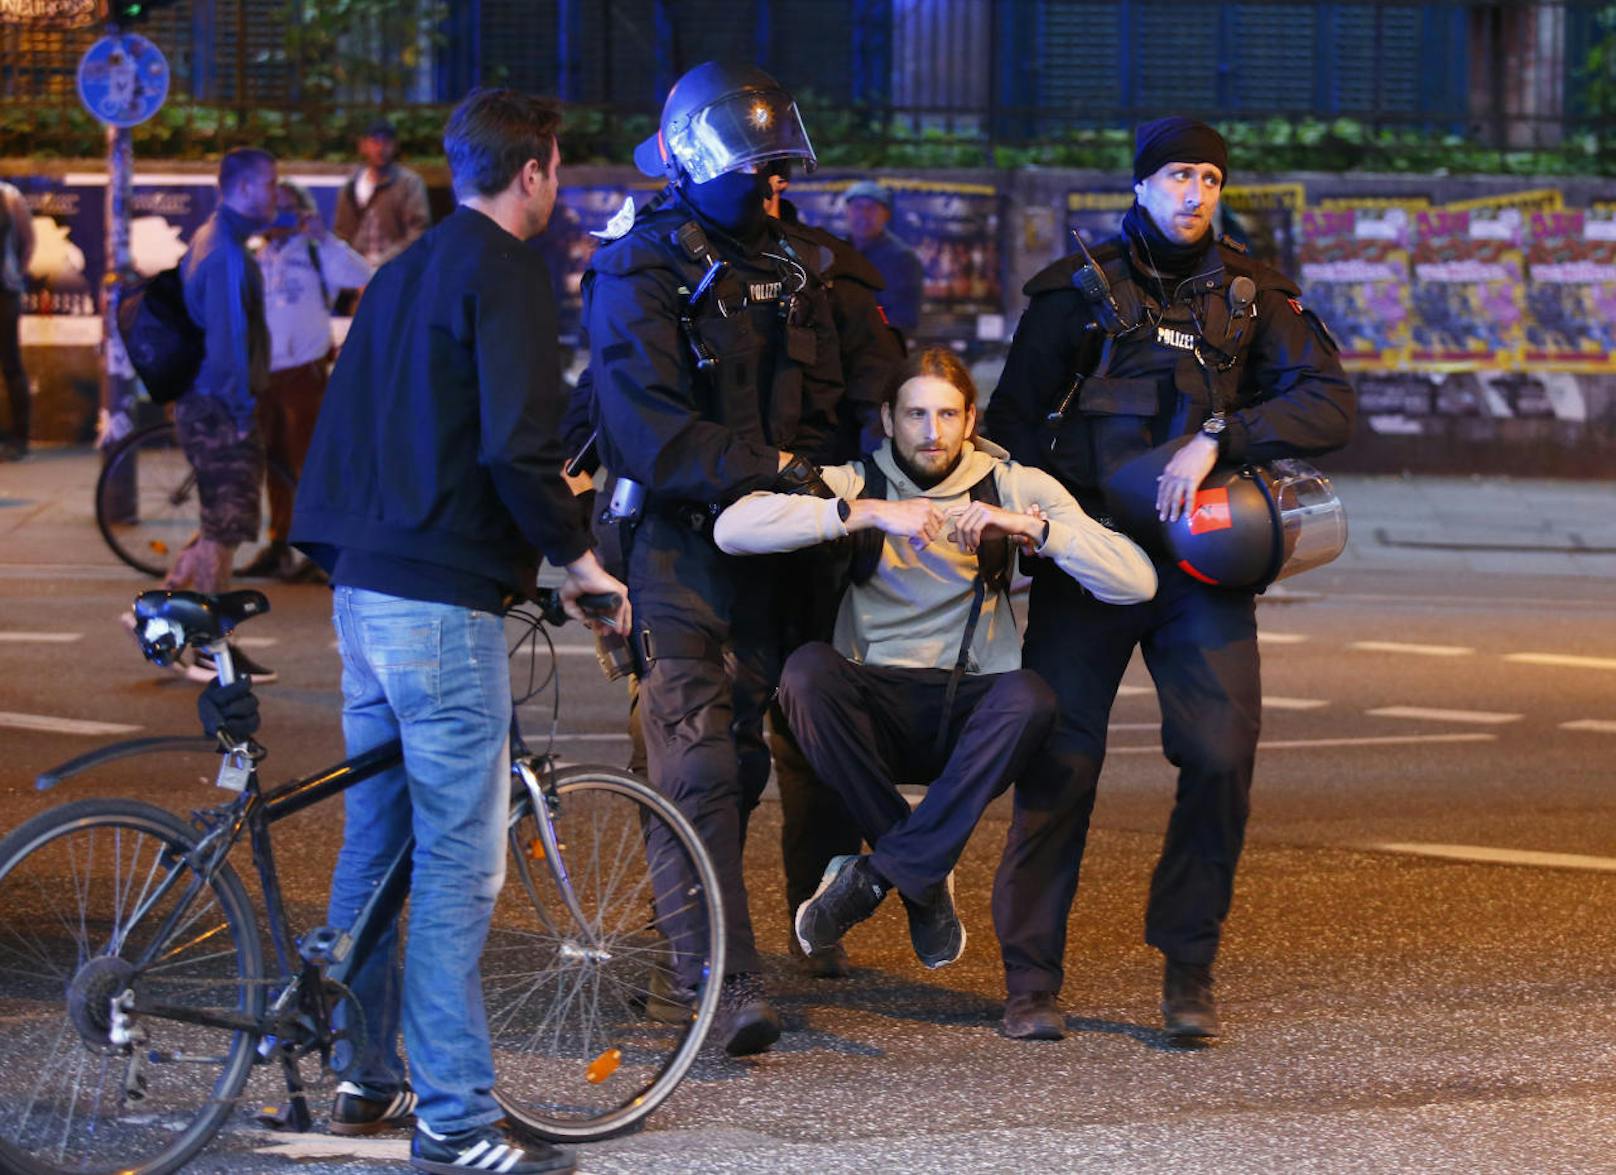 G20 in Hamburg, Ausschreitungen, Polizei mit Wasserwerfer